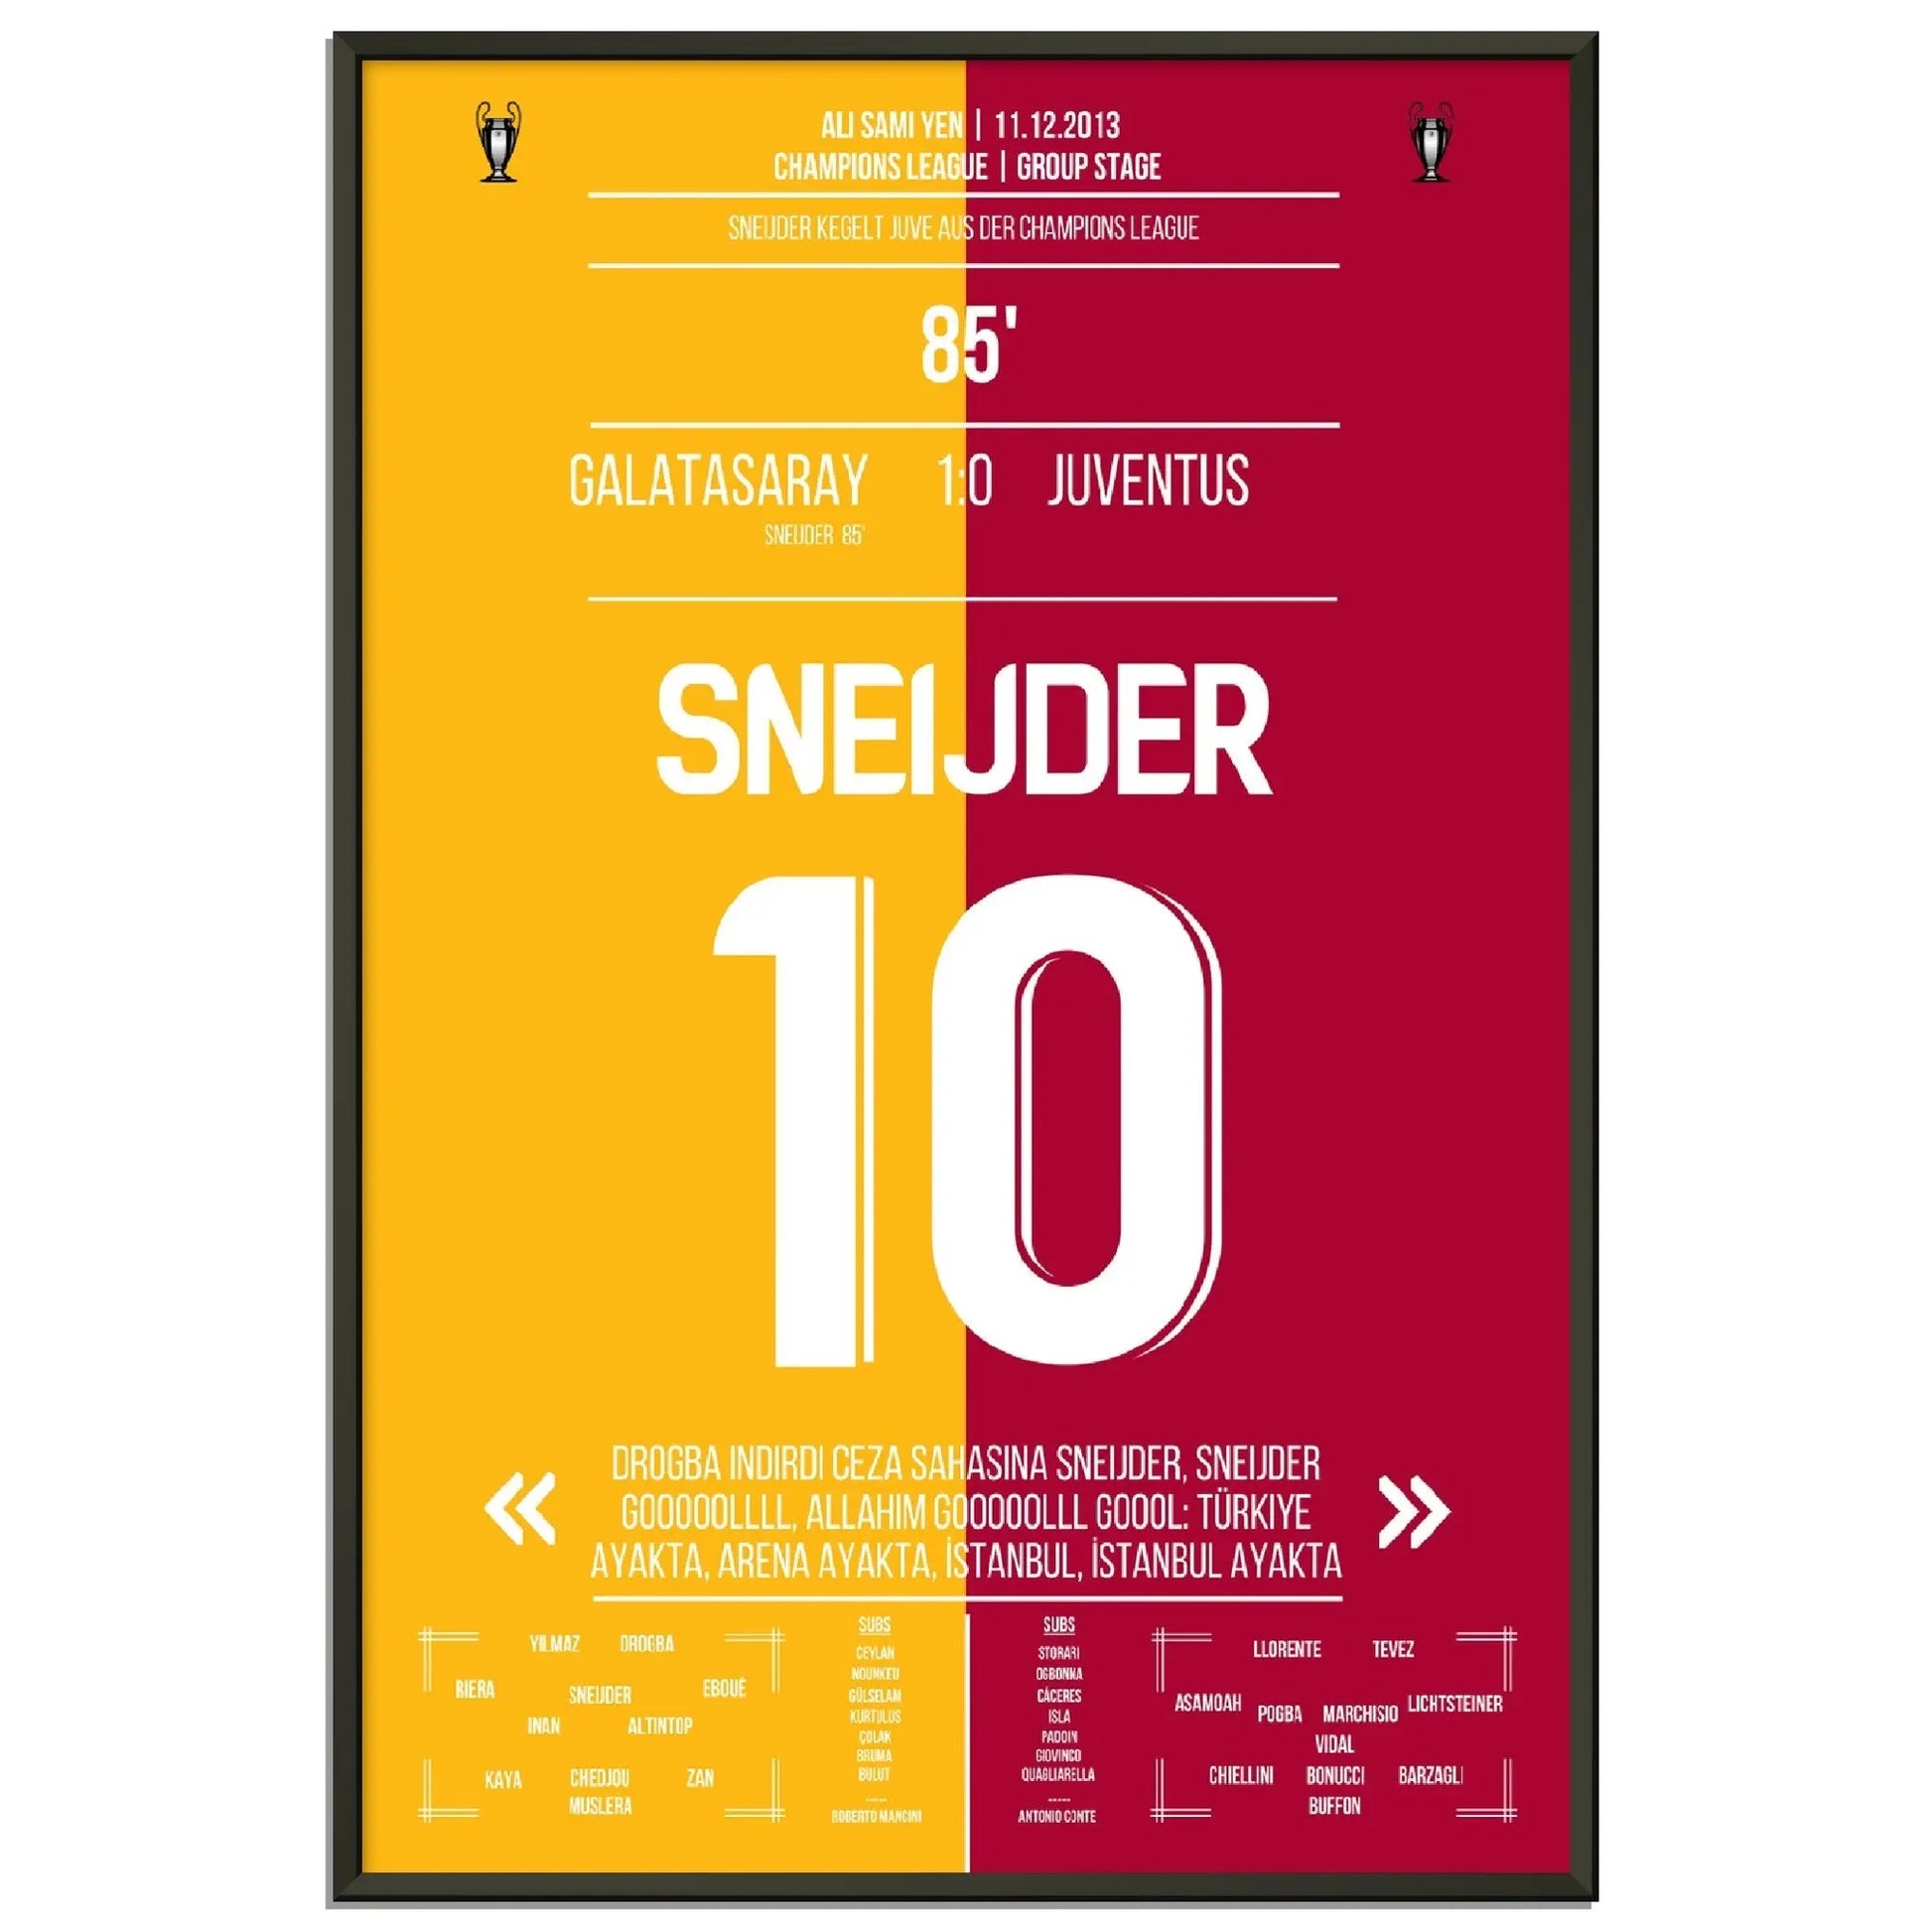 Sneijder macht die Sensation perfekt! Galatasaray wirft Juventus aus der Champions League in 2013 